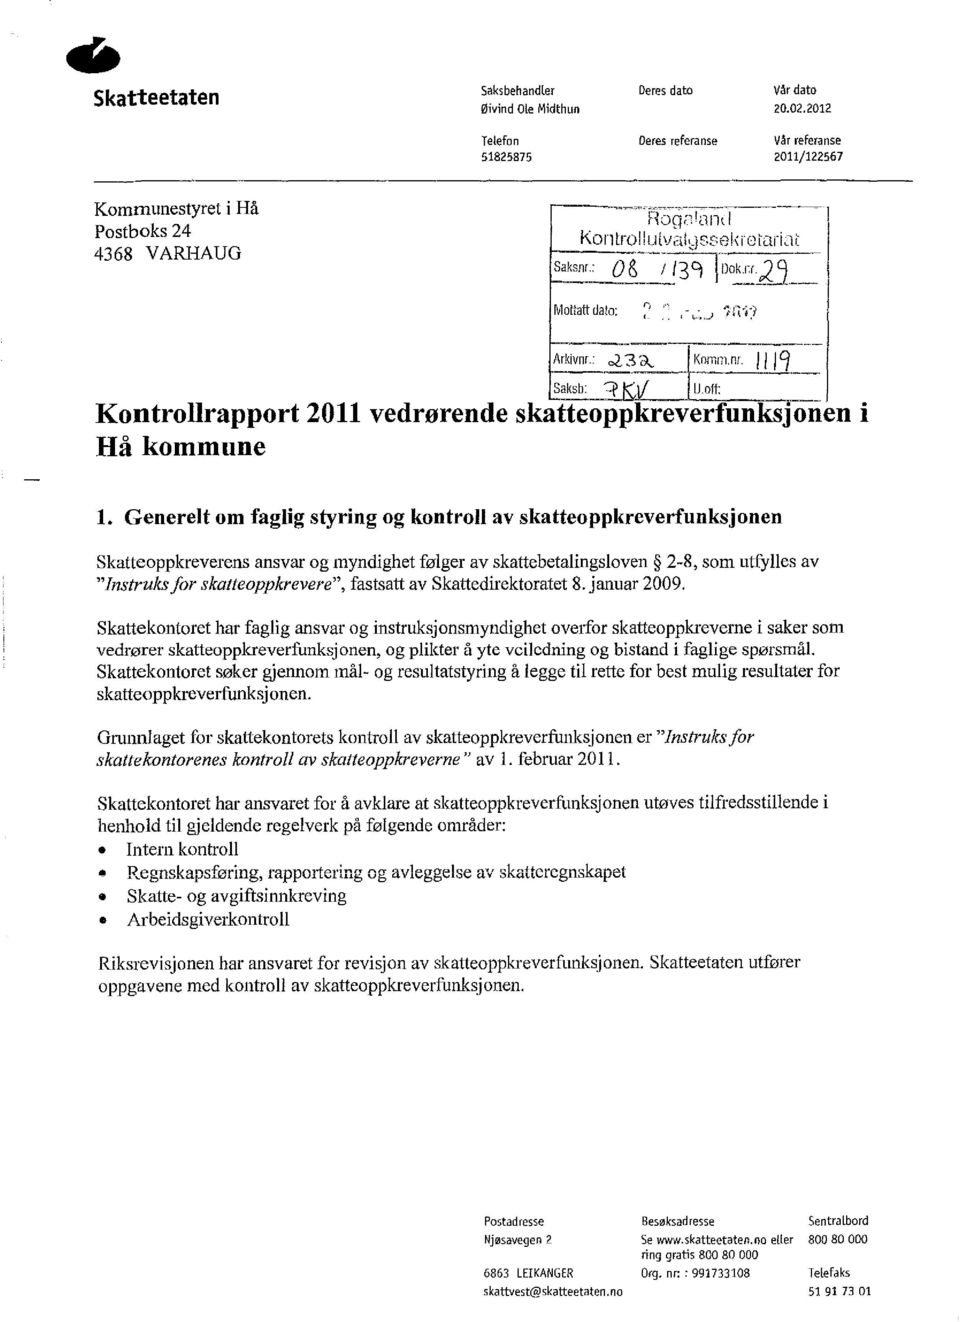 1;;o~~2j_ Mottatt dato:,, ":.J 'f'n-f:/ - - Arkivnr.: ~3<\. - Komm.nl. " Saksb: :p K,i/ U.off: Kontrollrapport 2011 vedrørende skatteoppkreverfunksjoiien i Hå kommune,q 1.